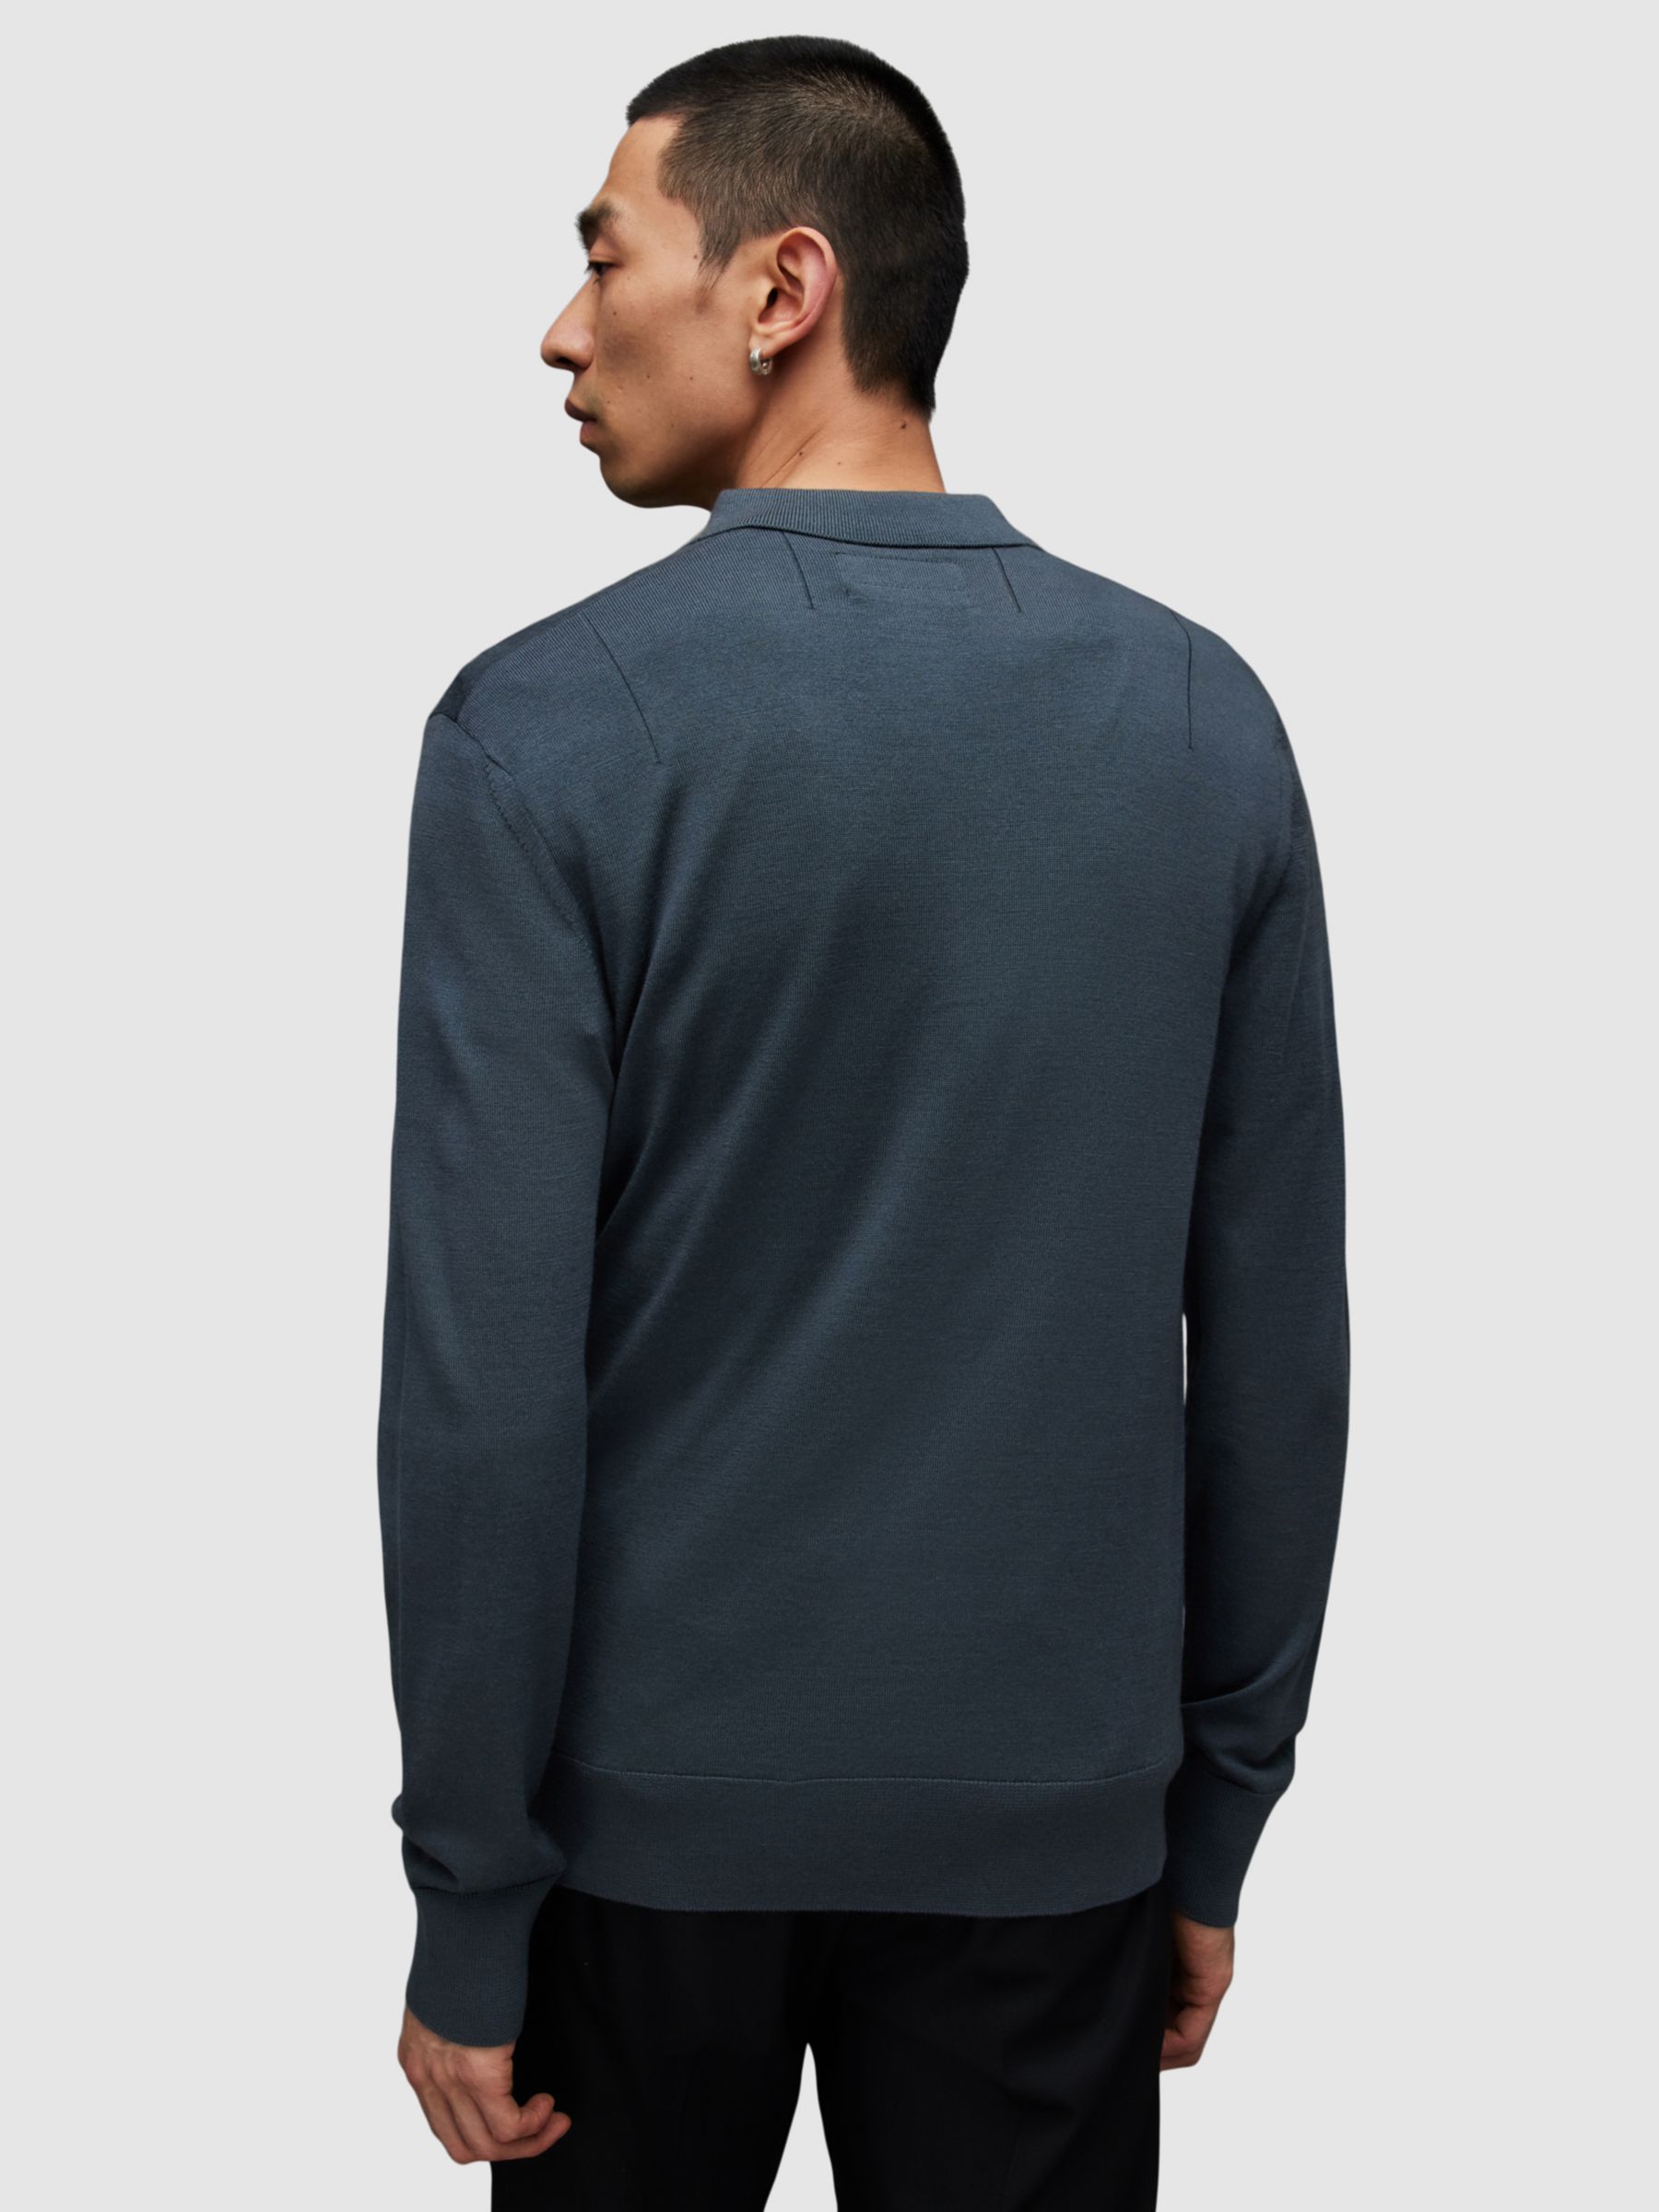 AllSaints Mode Merino Polo Shirt, Beetle Blue at John Lewis & Partners